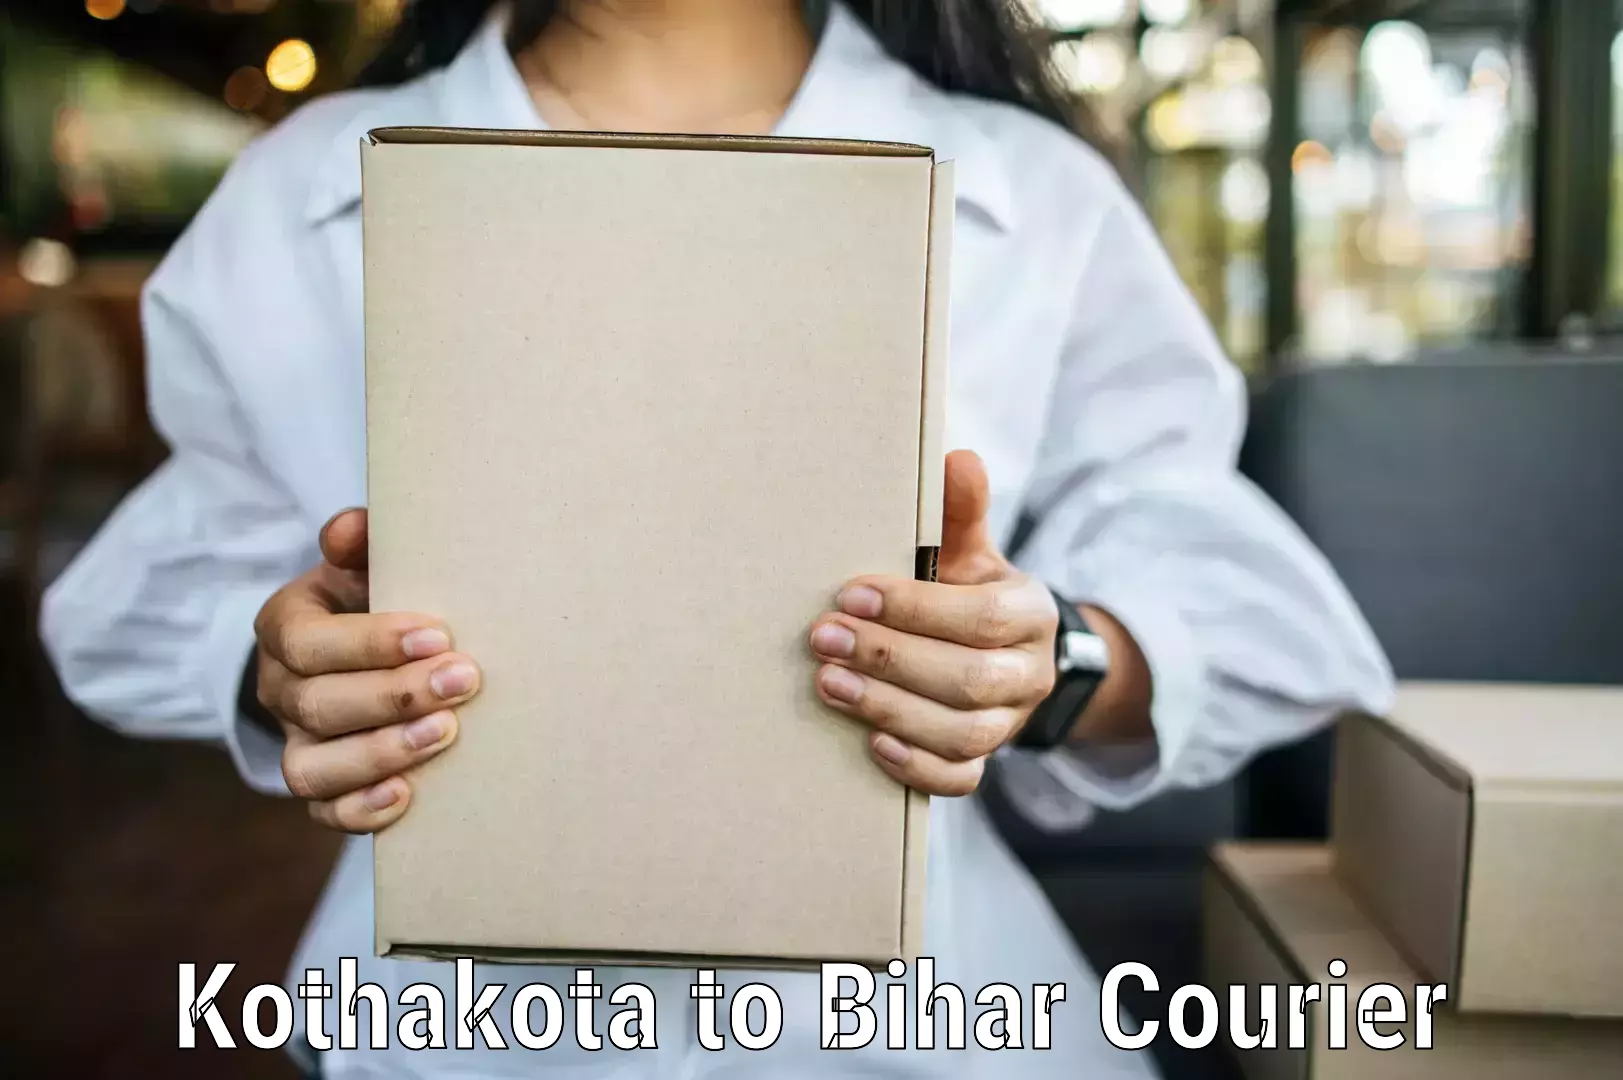 Quality courier services Kothakota to Kaluahi